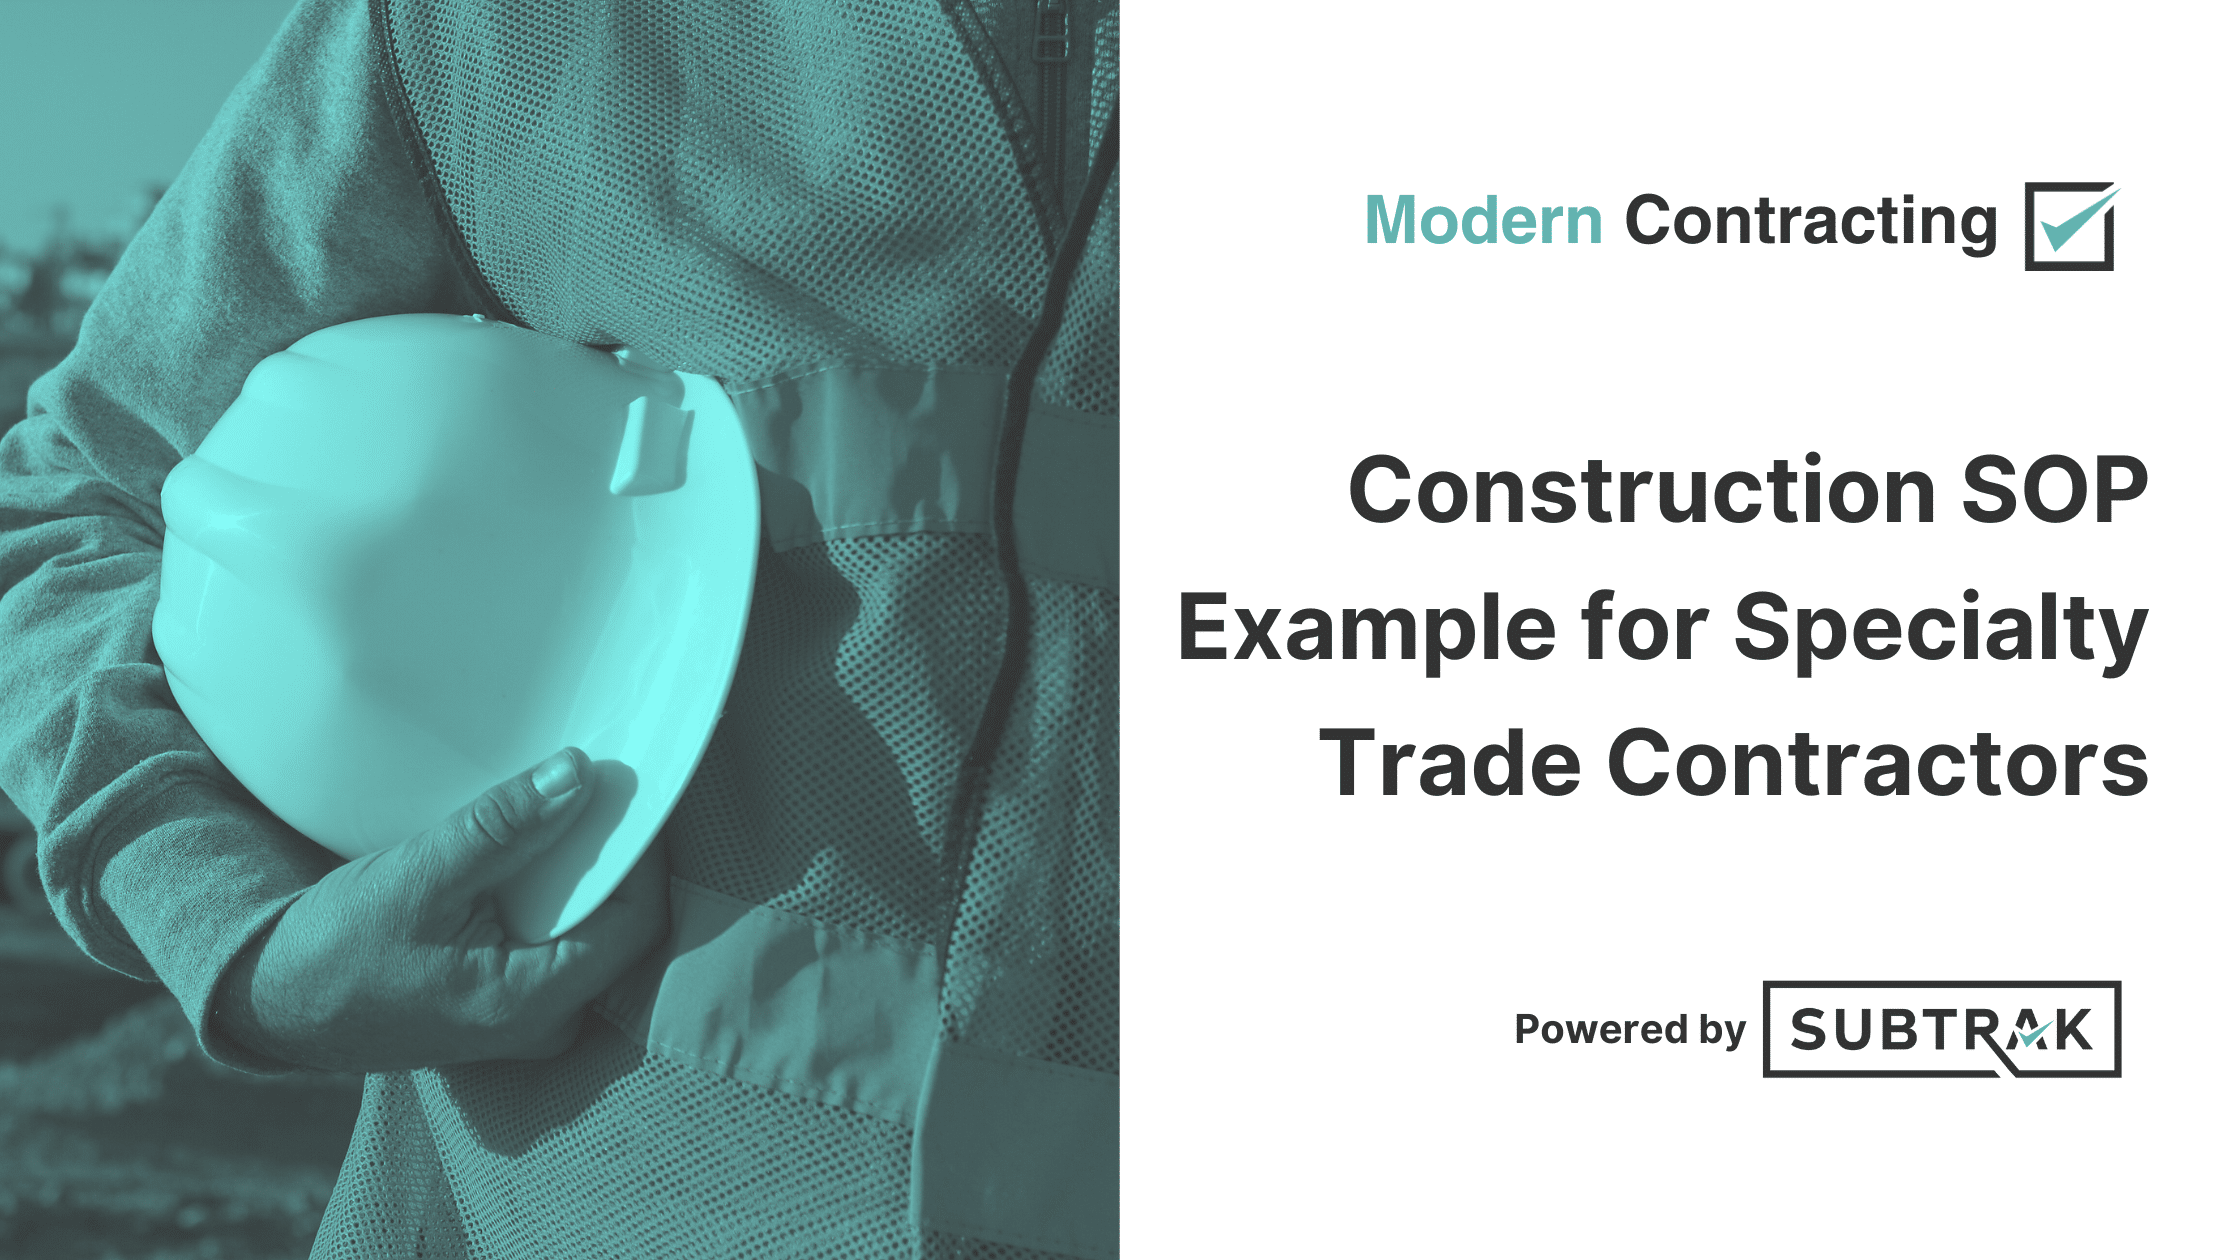 Construction SOP Example for Specialty Trade Contractors